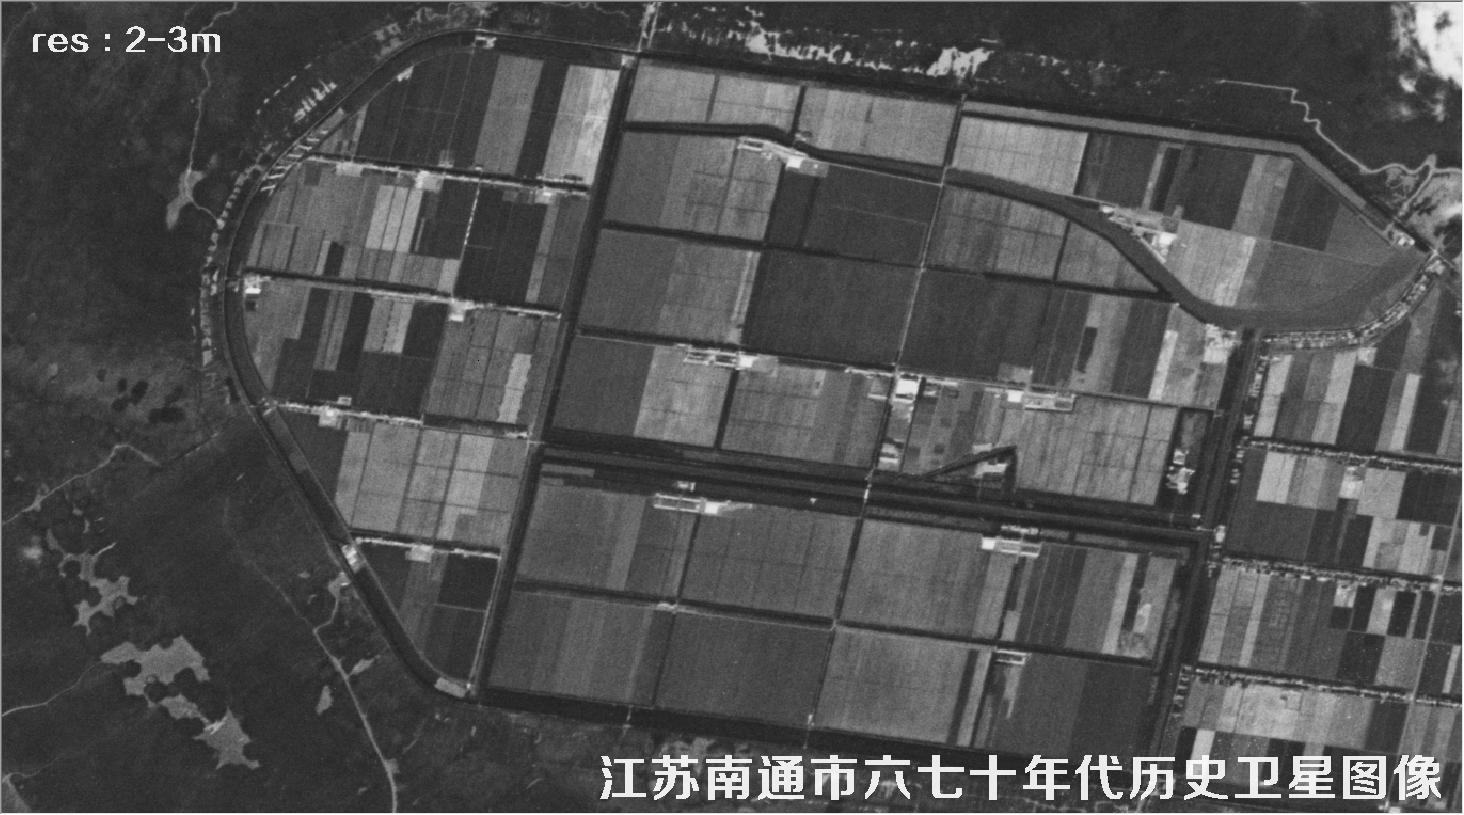 江苏省南通市某区域六七十年代锁眼卫星卫星历史图像